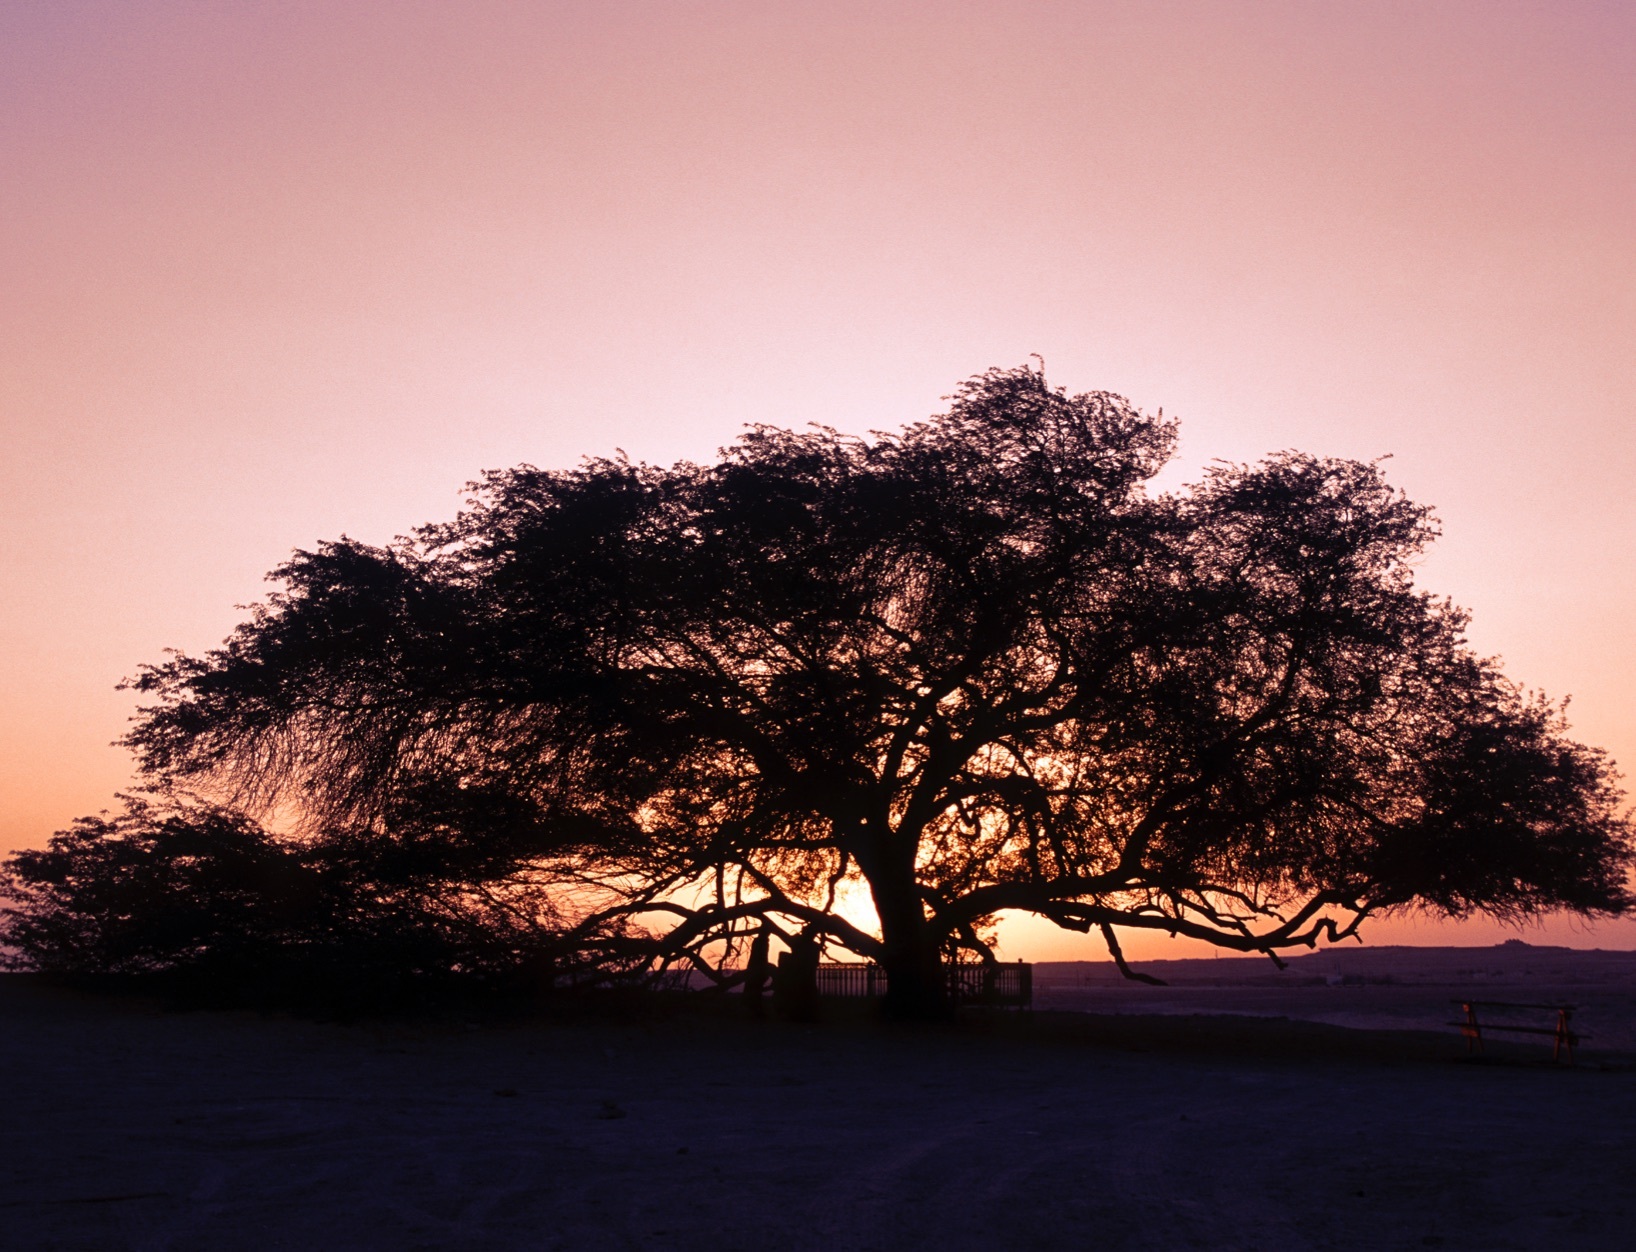 Дерево жизни Бахрейн